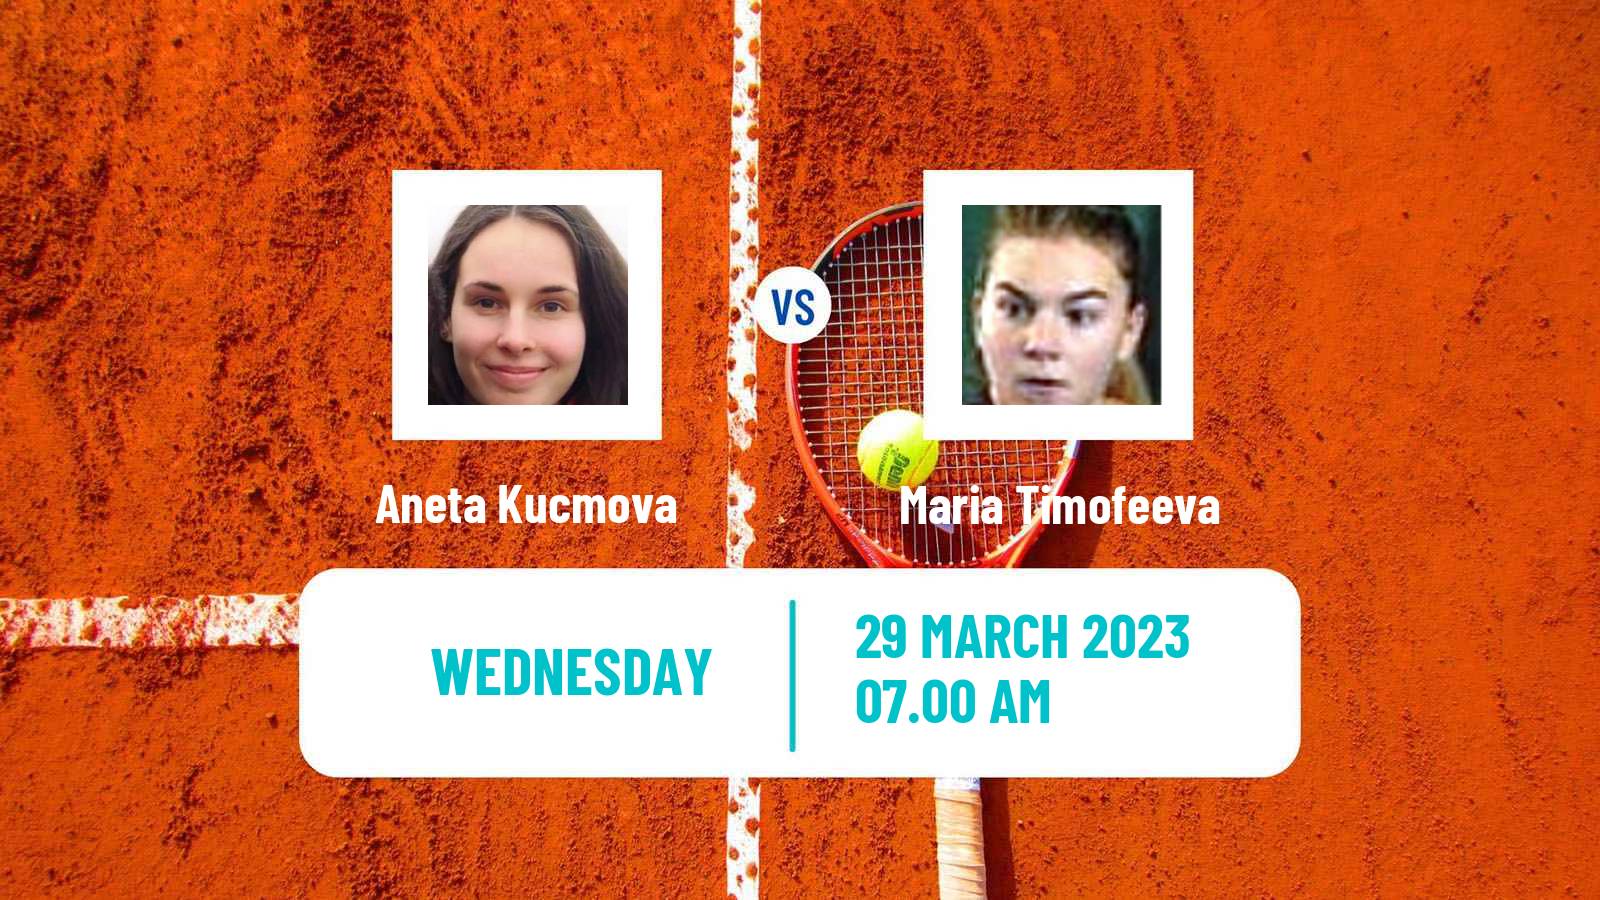 Tennis ITF Tournaments Aneta Kucmova - Maria Timofeeva